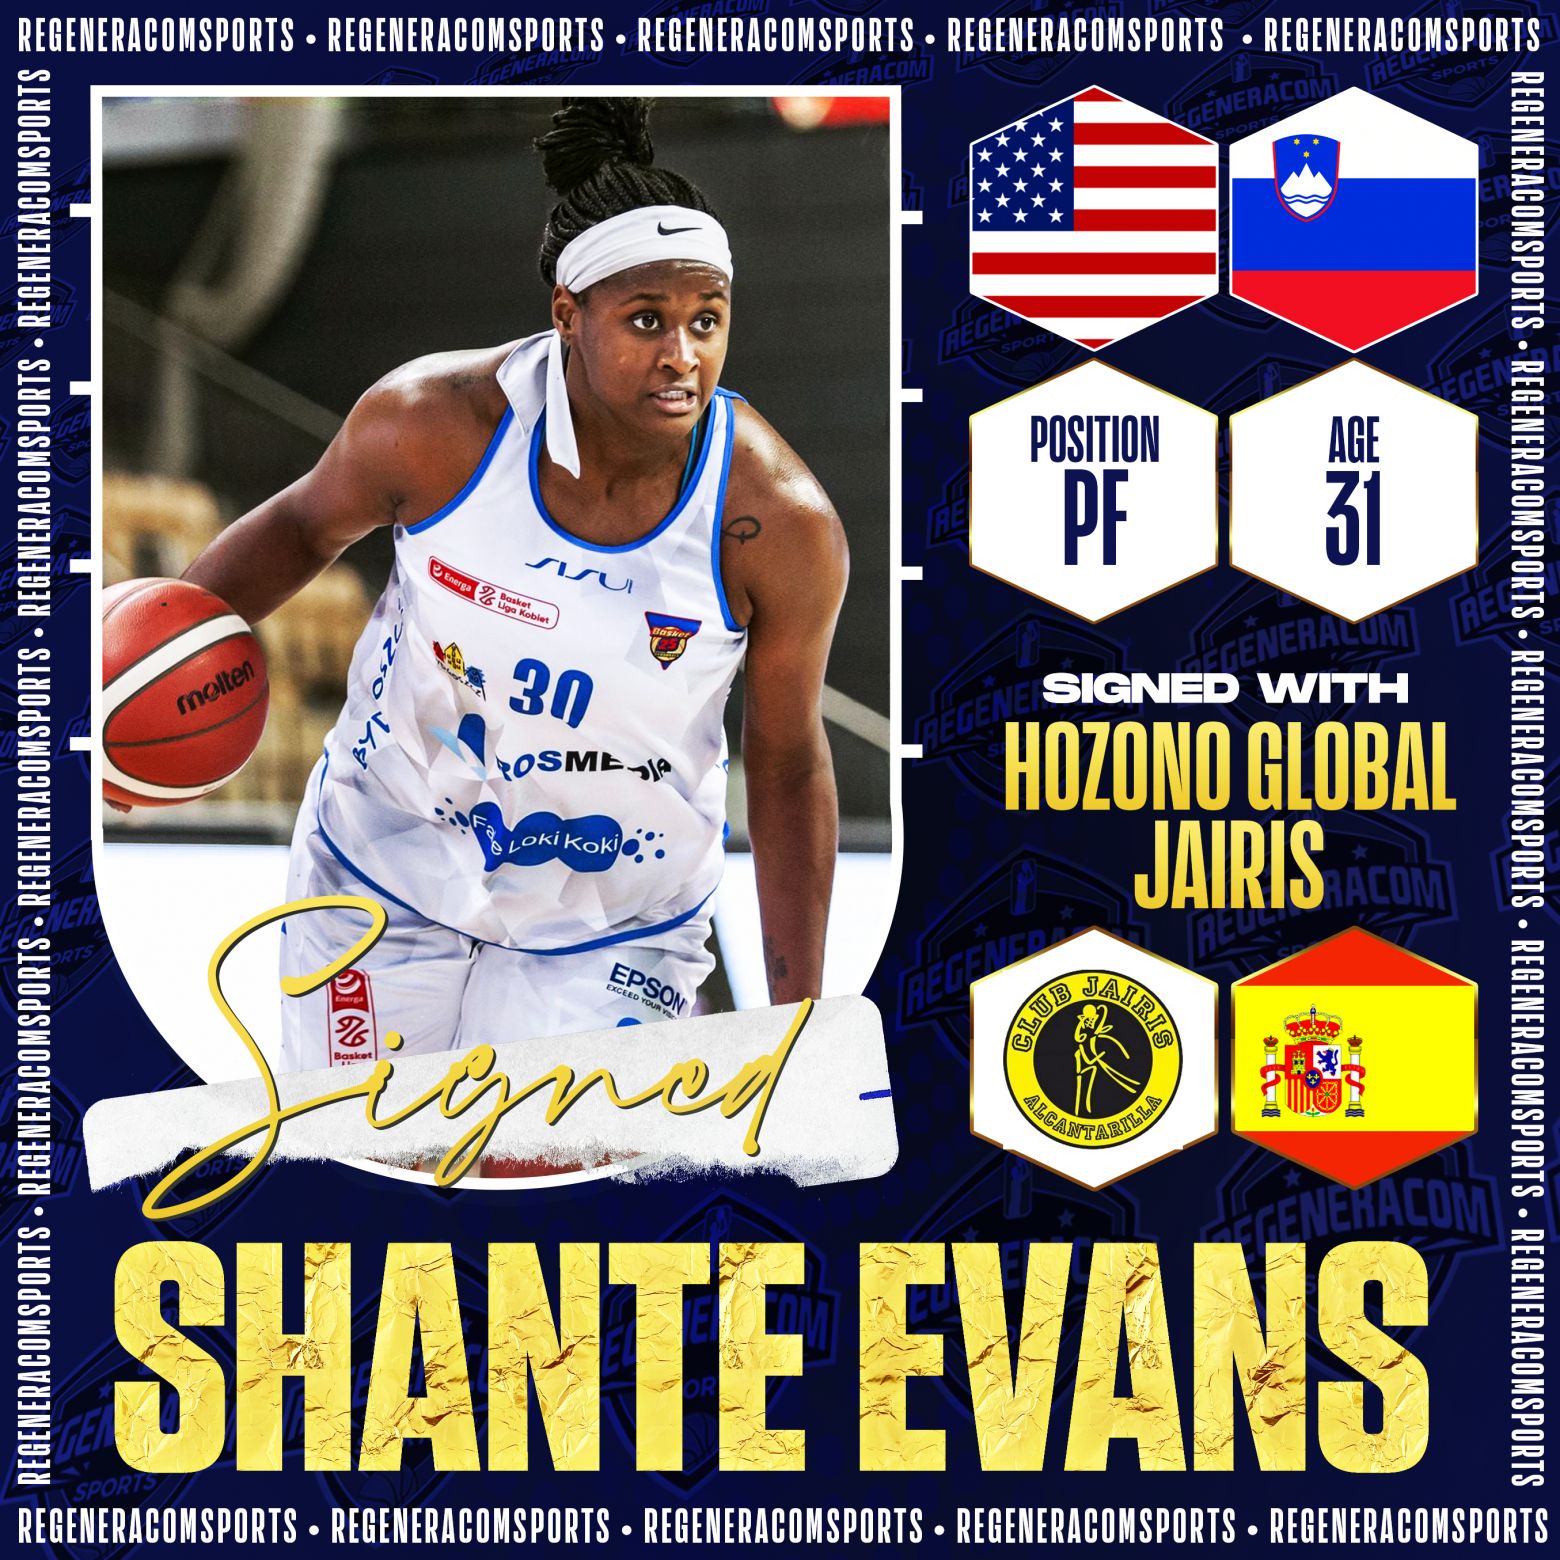 SHANTE EVANS ha firmado con Hozono Global Jairis para la temporada 2022/23